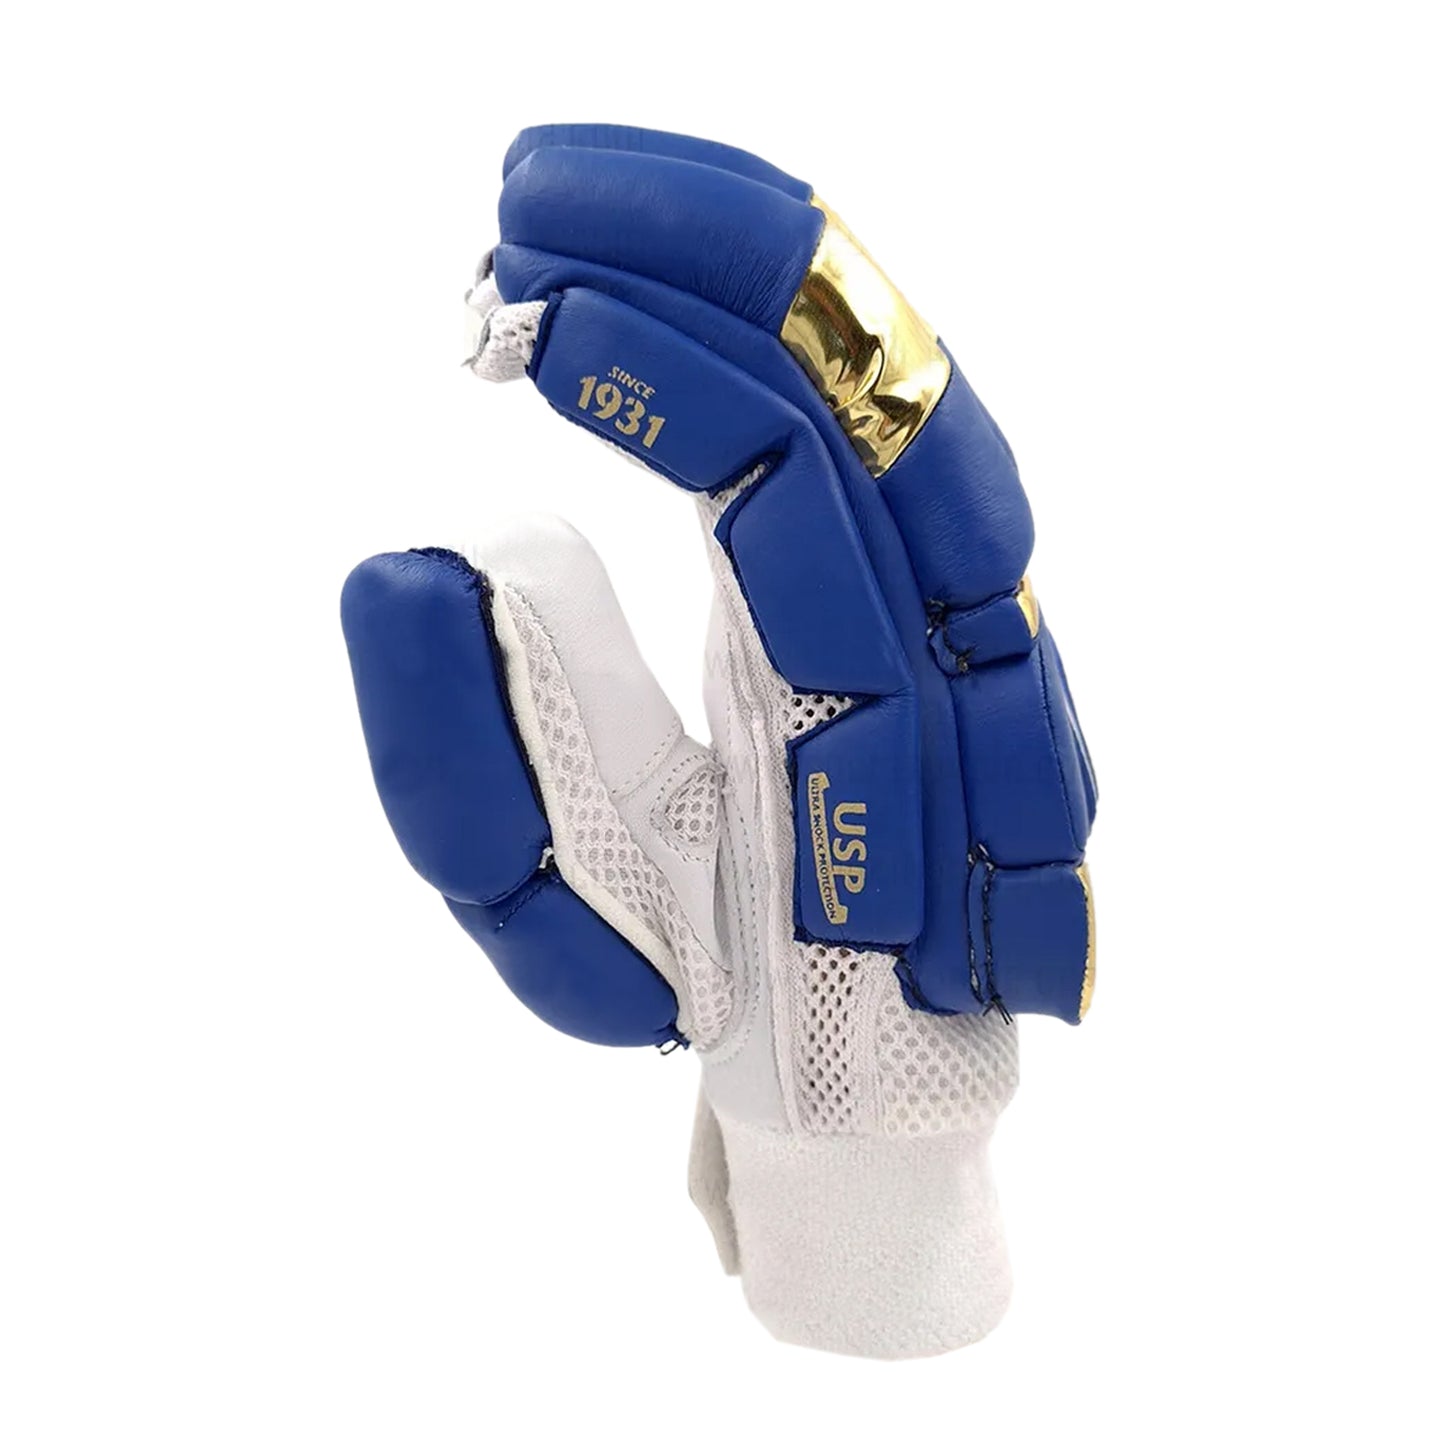 SG Test MI Batting Gloves - Left Hand, Navy/Gold - Best Price online Prokicksports.com